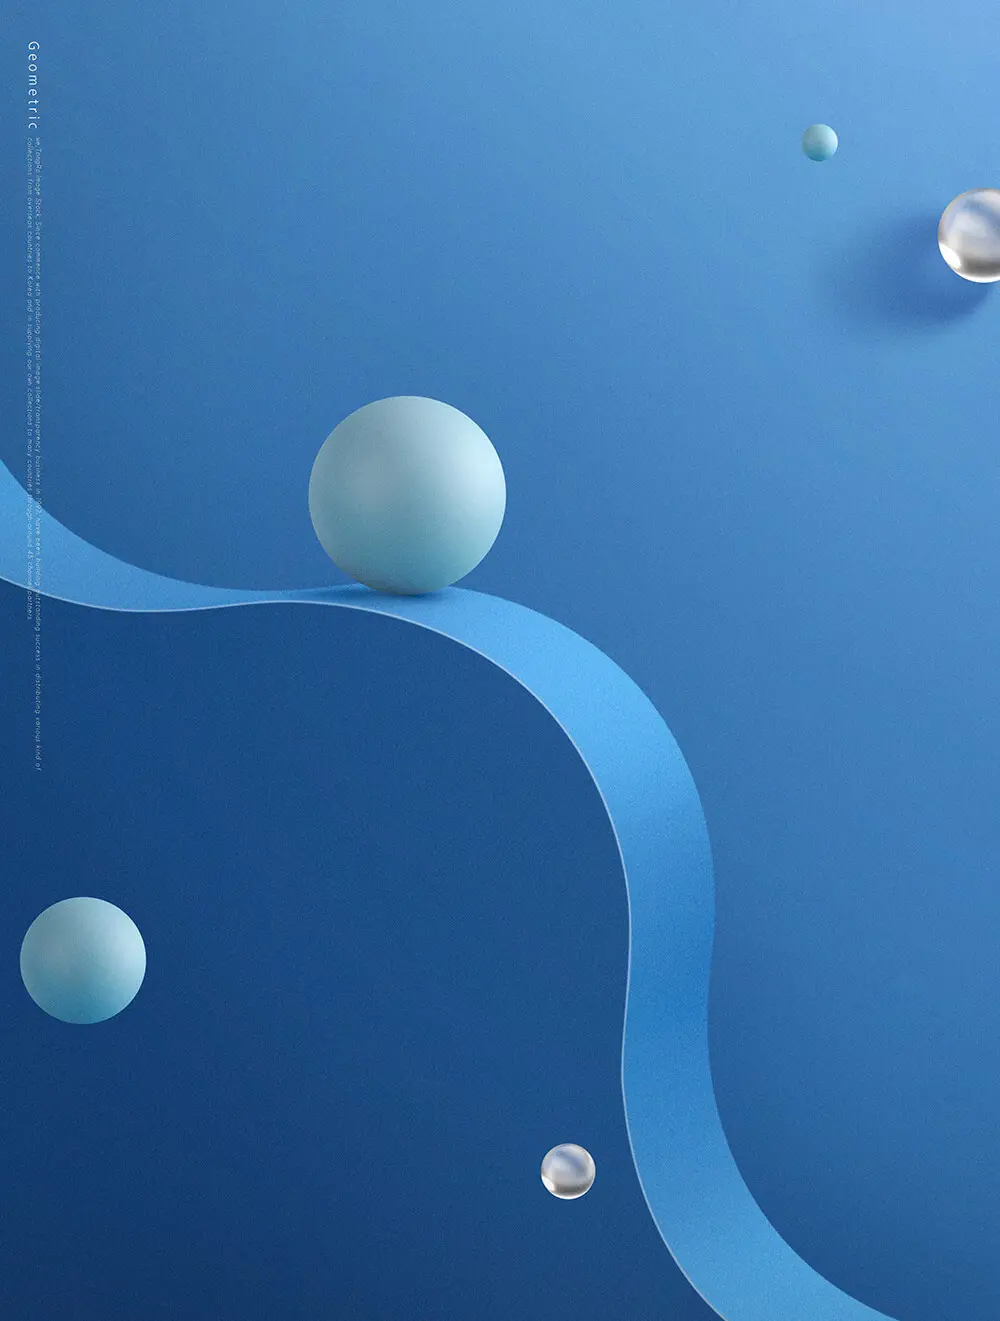 蓝色波浪创意空间海报背景素材 (psd)插图